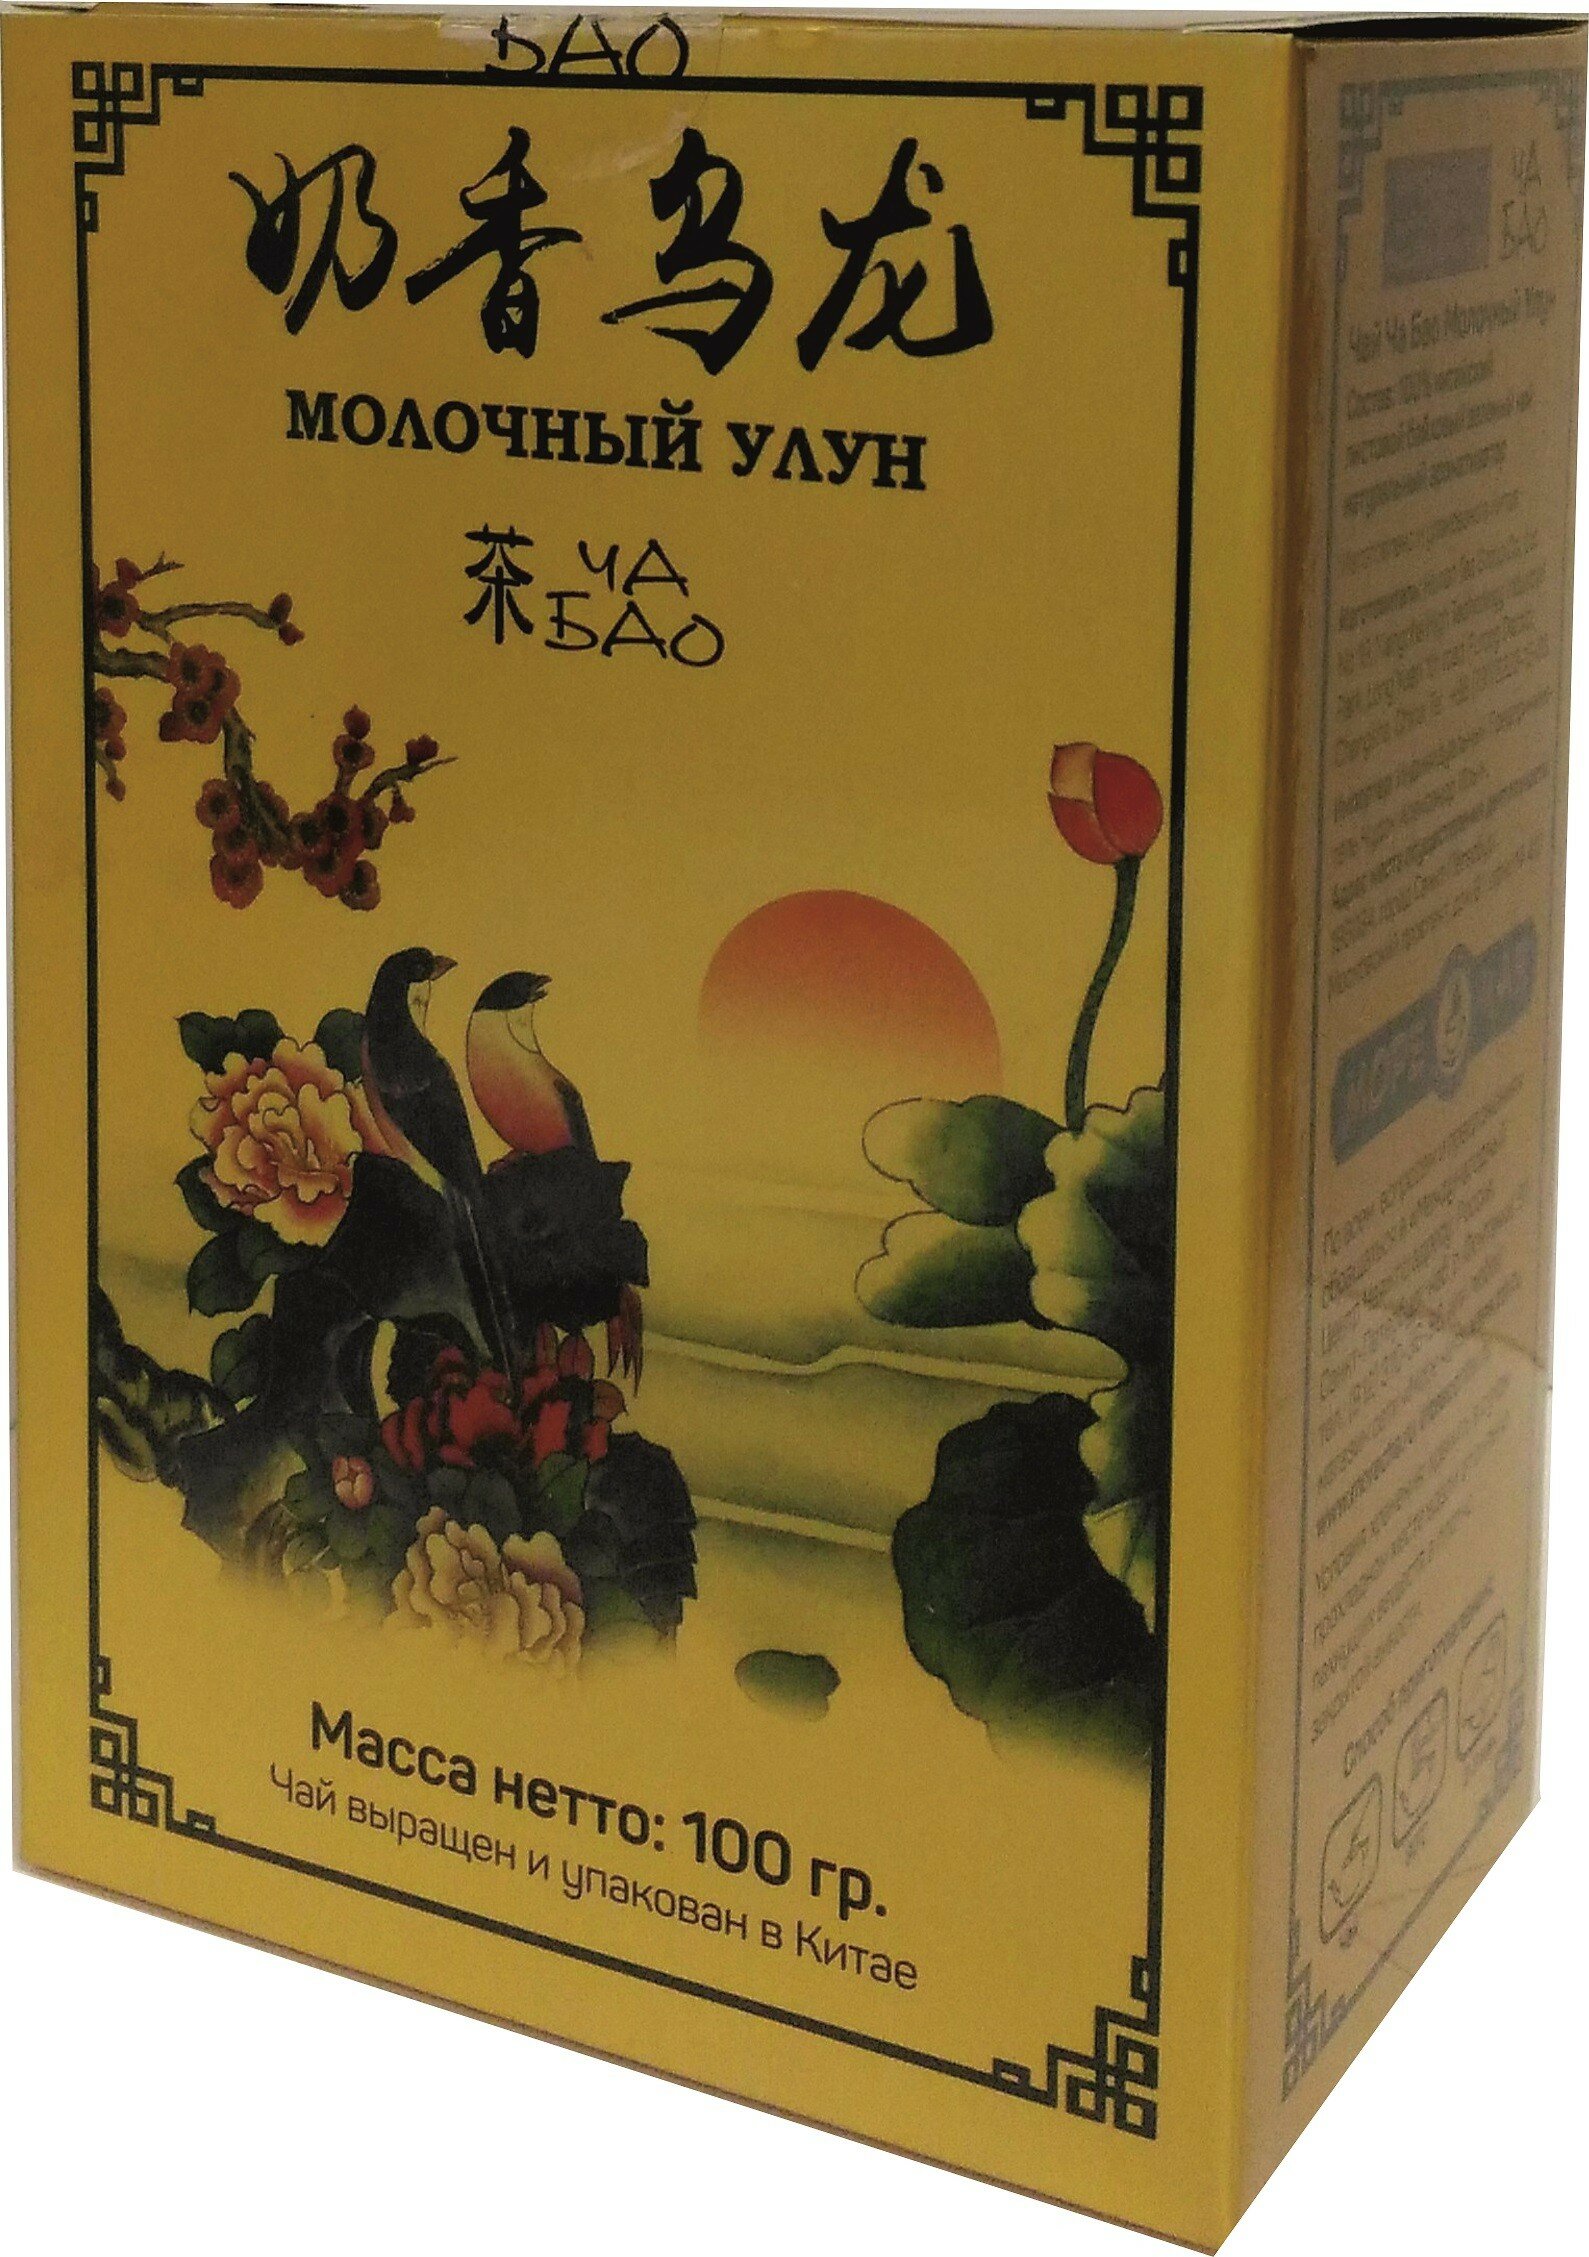 Чай улун ТМ "Ча Бао" - Молочный улун, картон, листовой, Китай, 100 гр. - фотография № 6